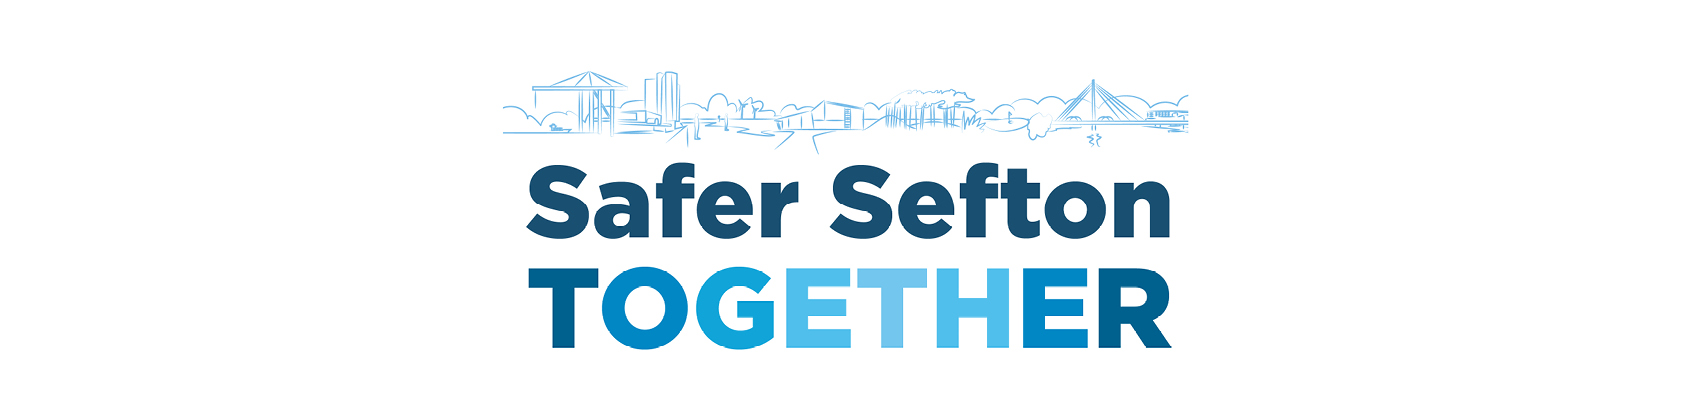 Sefton Safer Together 